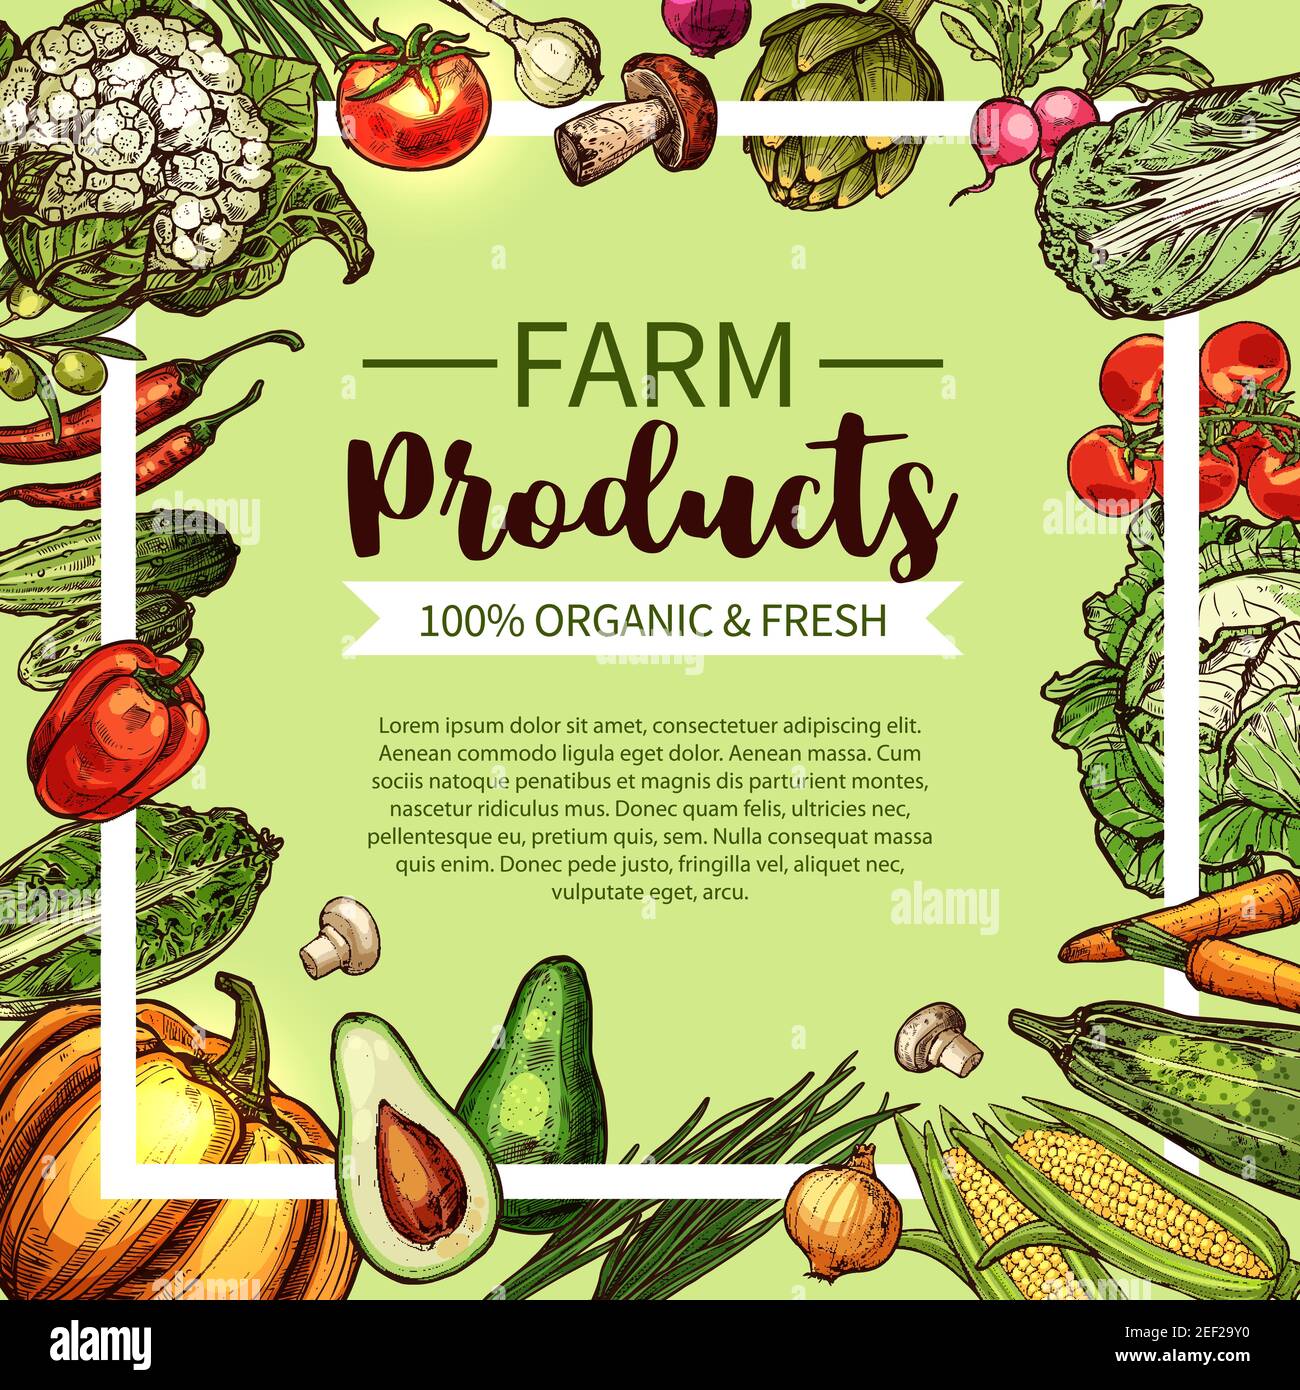 Gemüse und Pilz Skizze Rahmen von frischen landwirtschaftlichen Produkten. Tomaten, Pfeffer, Karotten und Zwiebeln, Kohl, Oliven, Chili und Mais, Gurke, Zucchini, Radis Stock Vektor